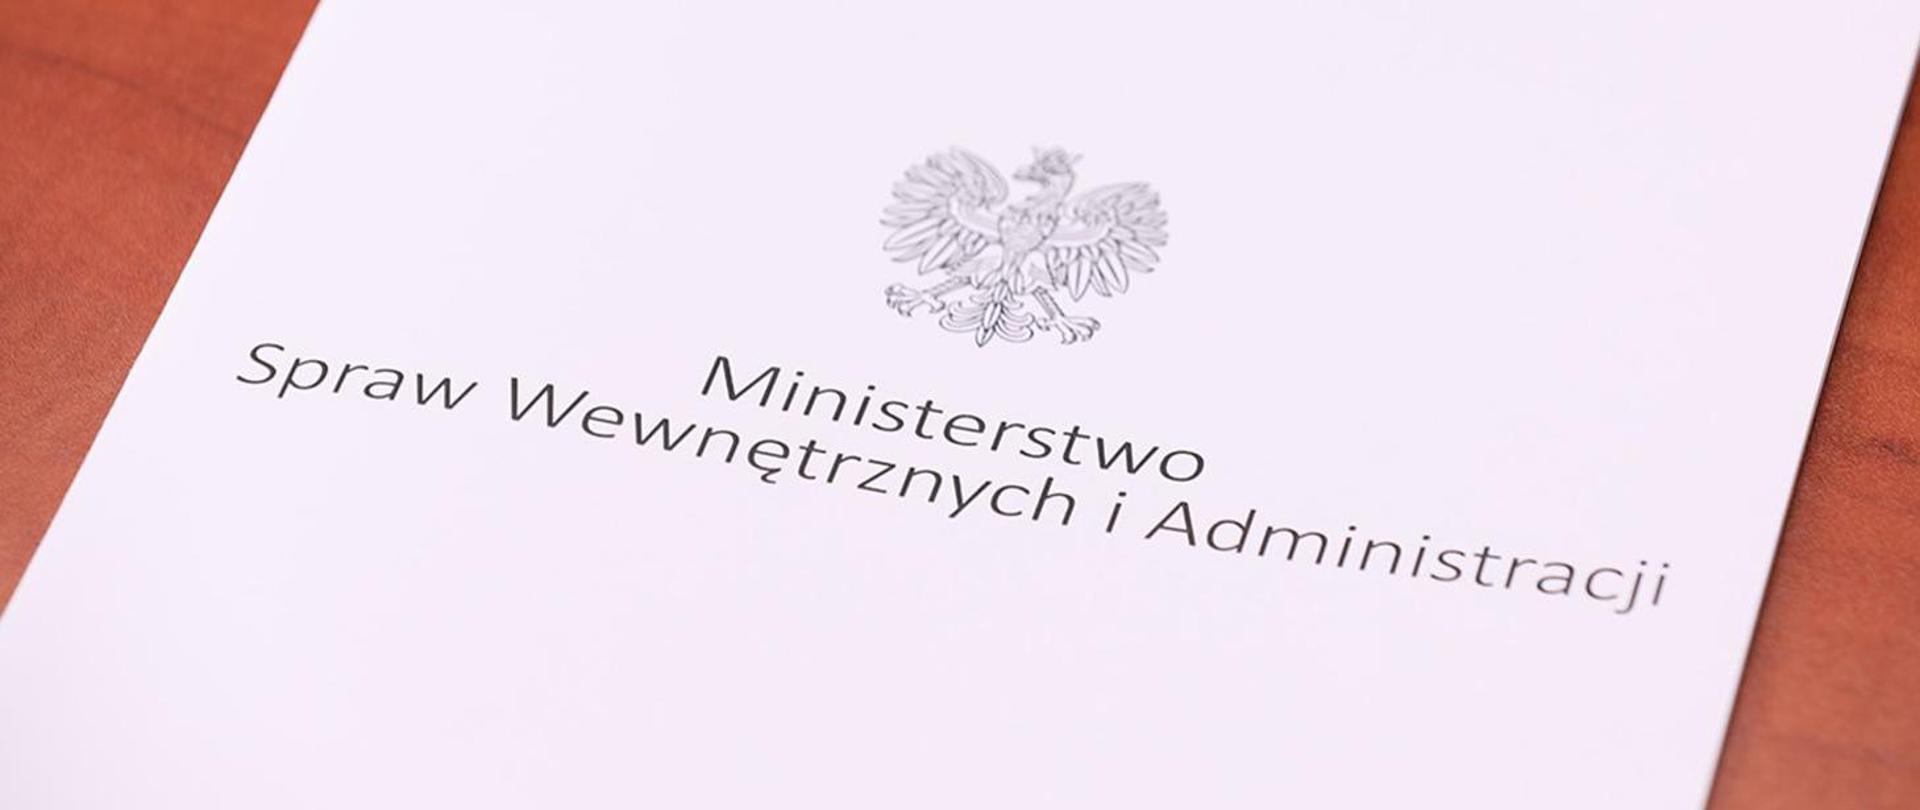 Zdjęcie przedstawia teczkę na dokumenty z napisem Ministerstwo Spraw Wewnętrznych i Administracji